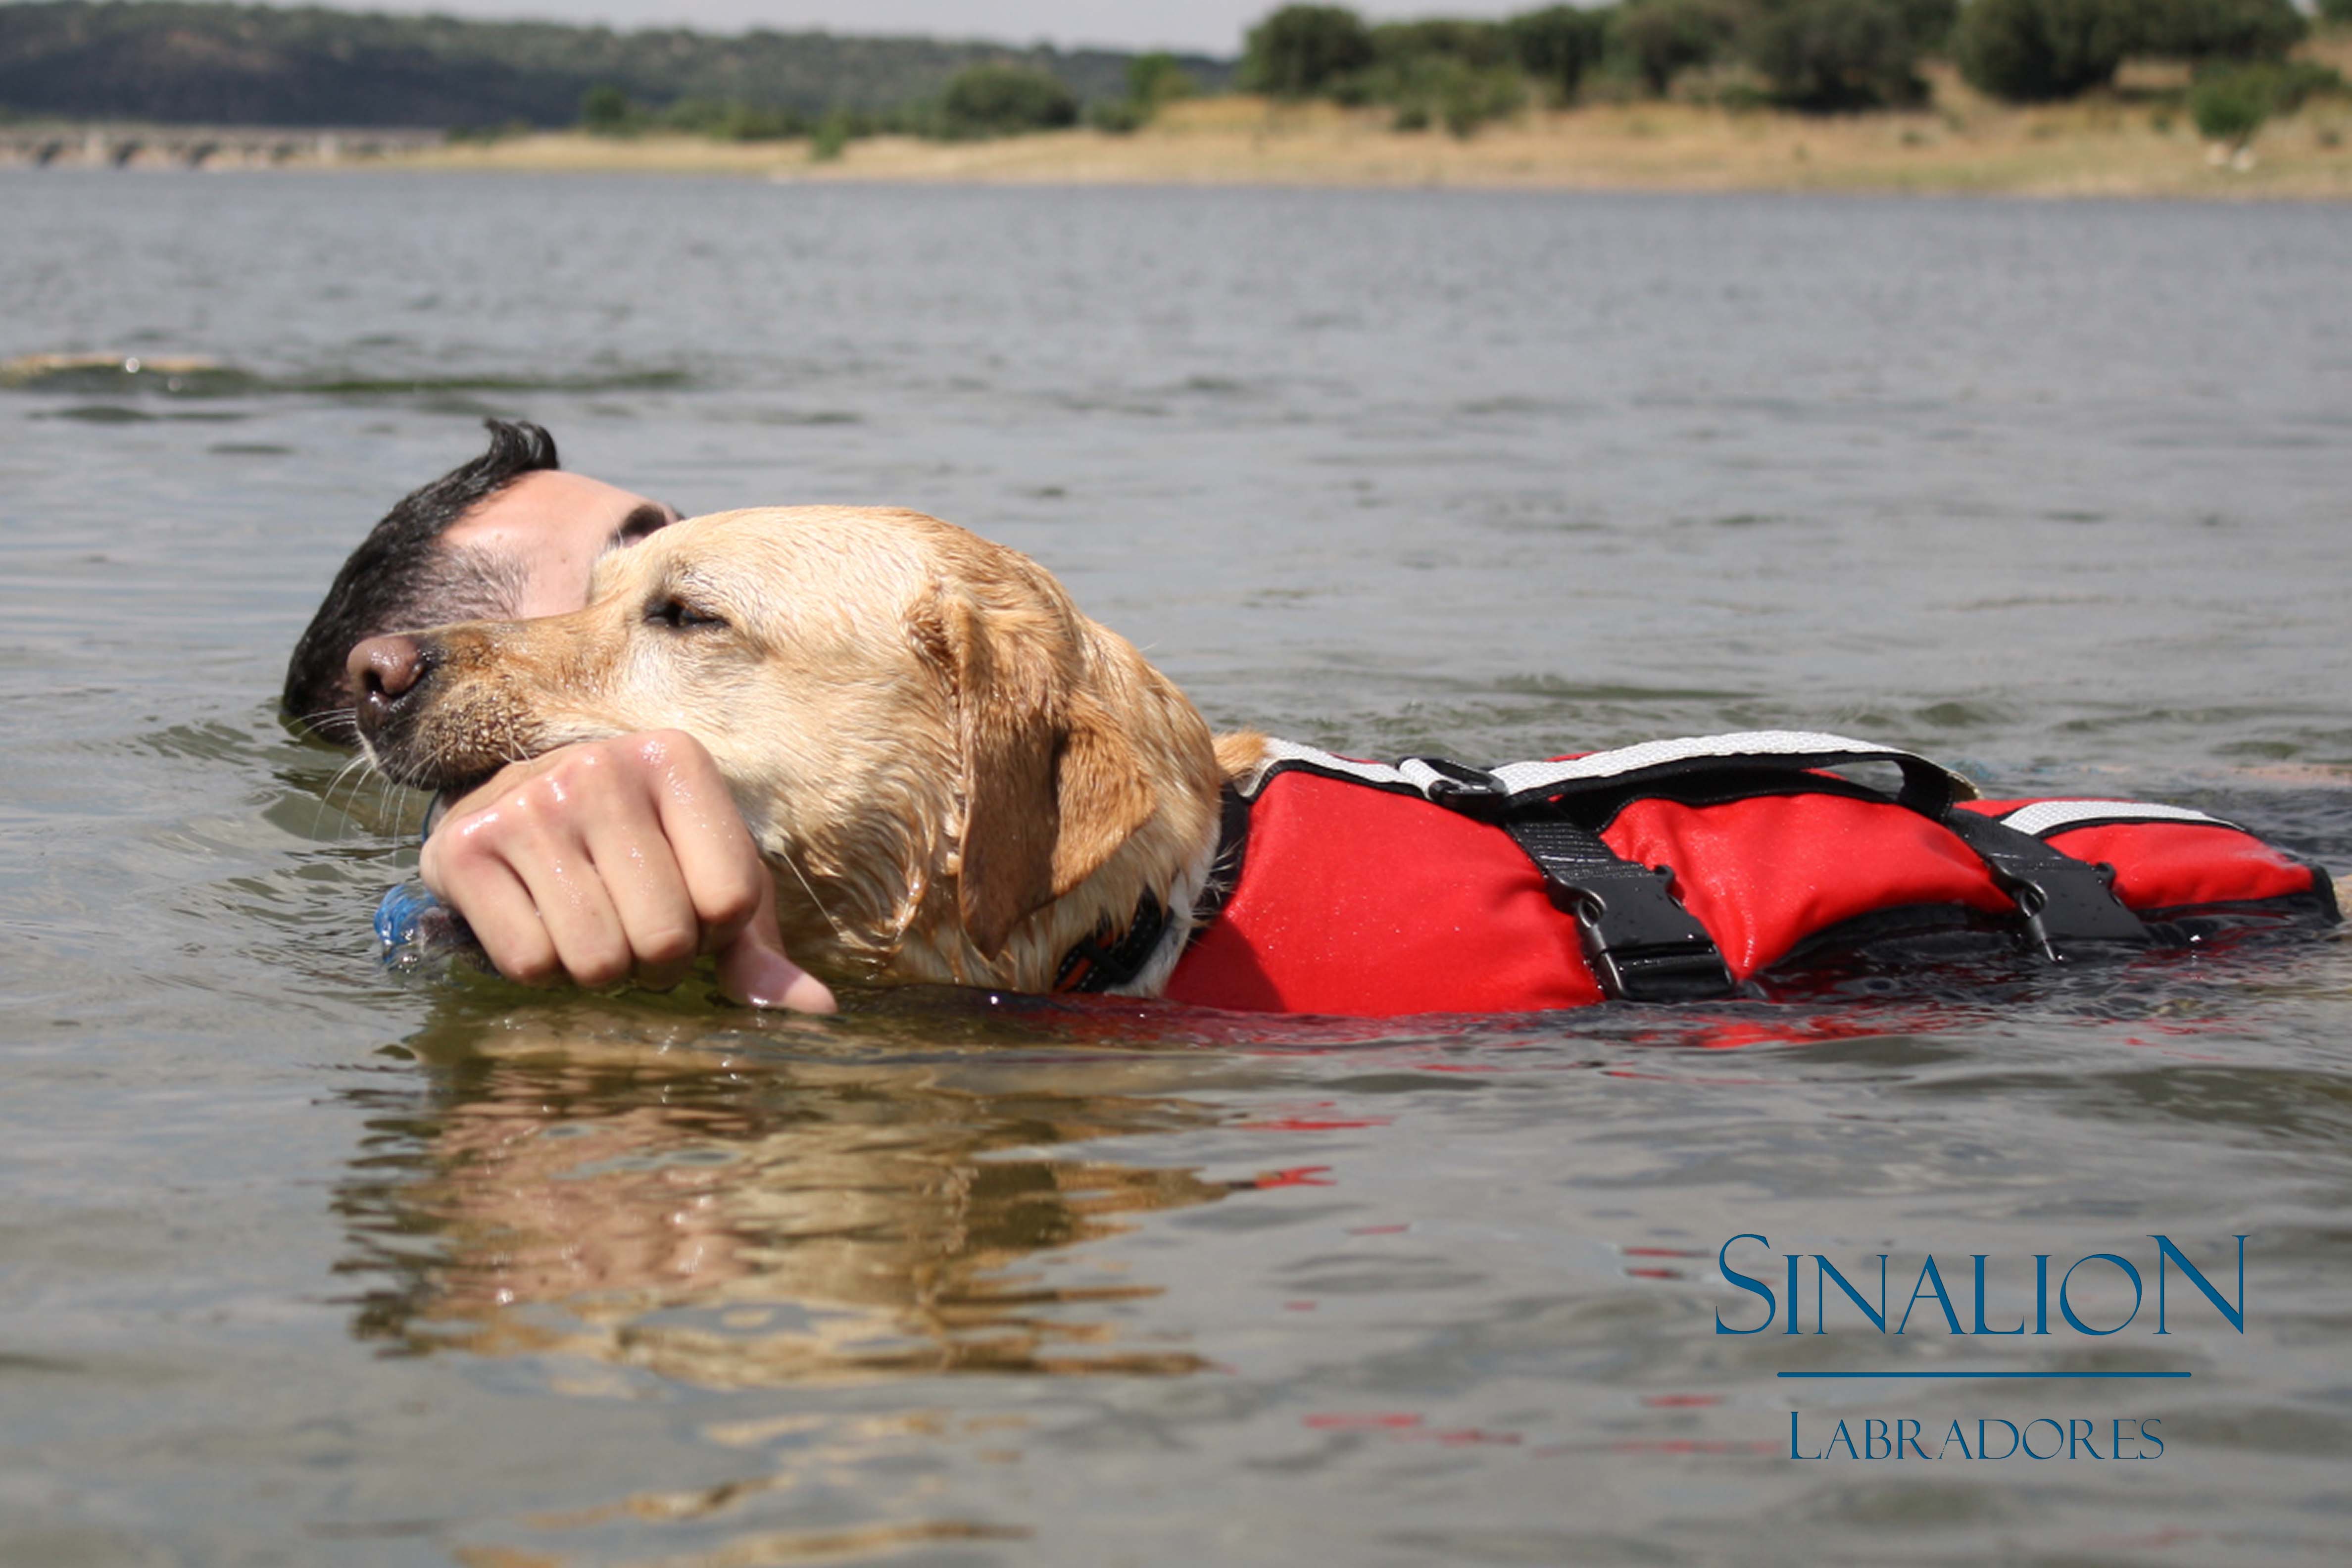 Trabajo en agua Sinalión Labradores salvamento con perros